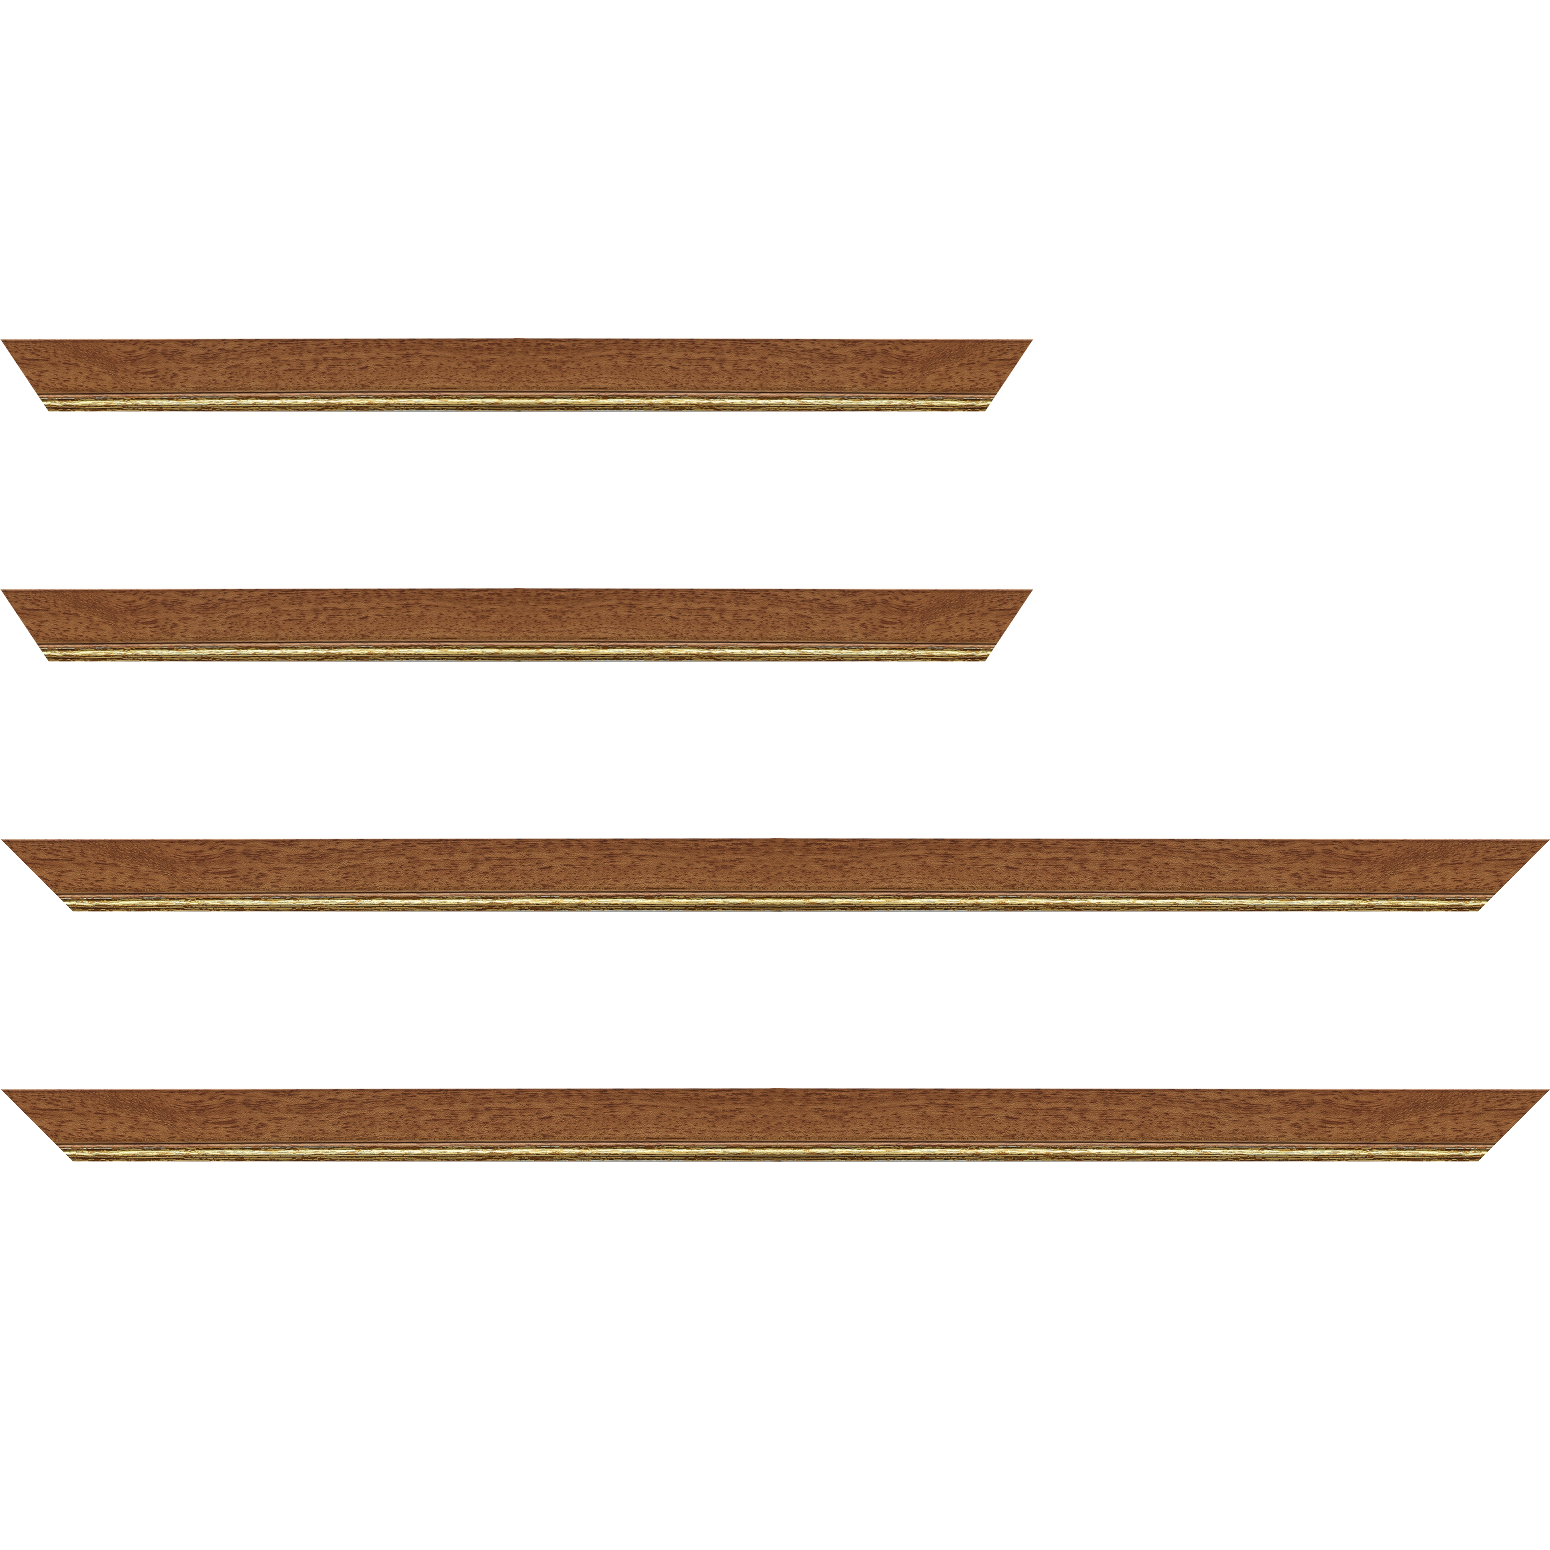 Baguette bois profil plat largeur 2.5cm couleur marron ton bois filet or - 28x34